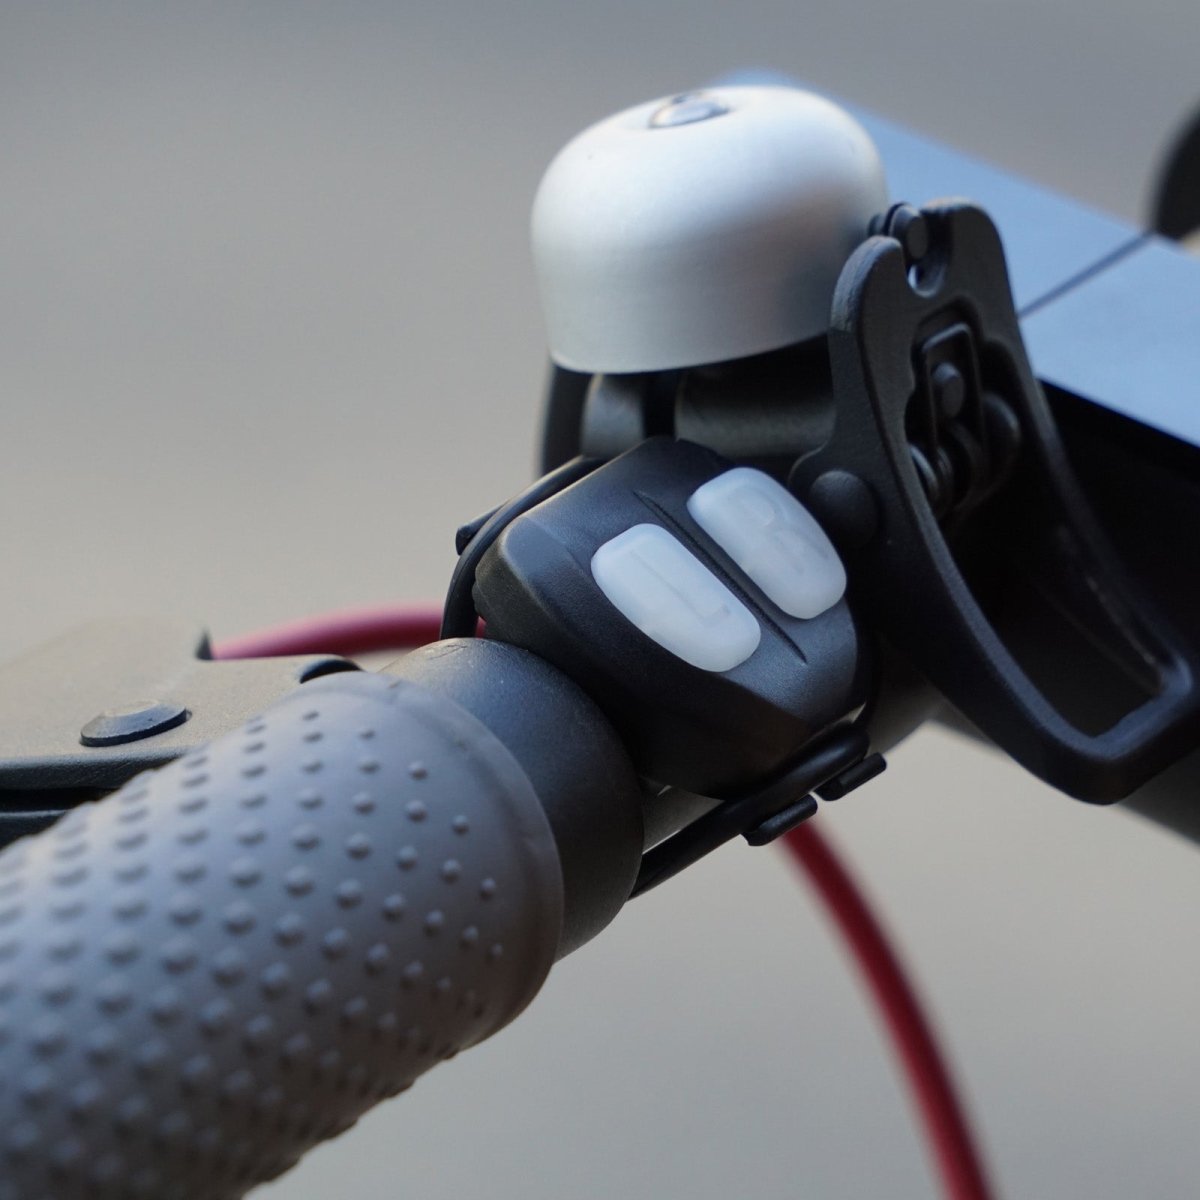 Lumière à effets pour Roues de Vélo - Accessoires - Attitude Vélo